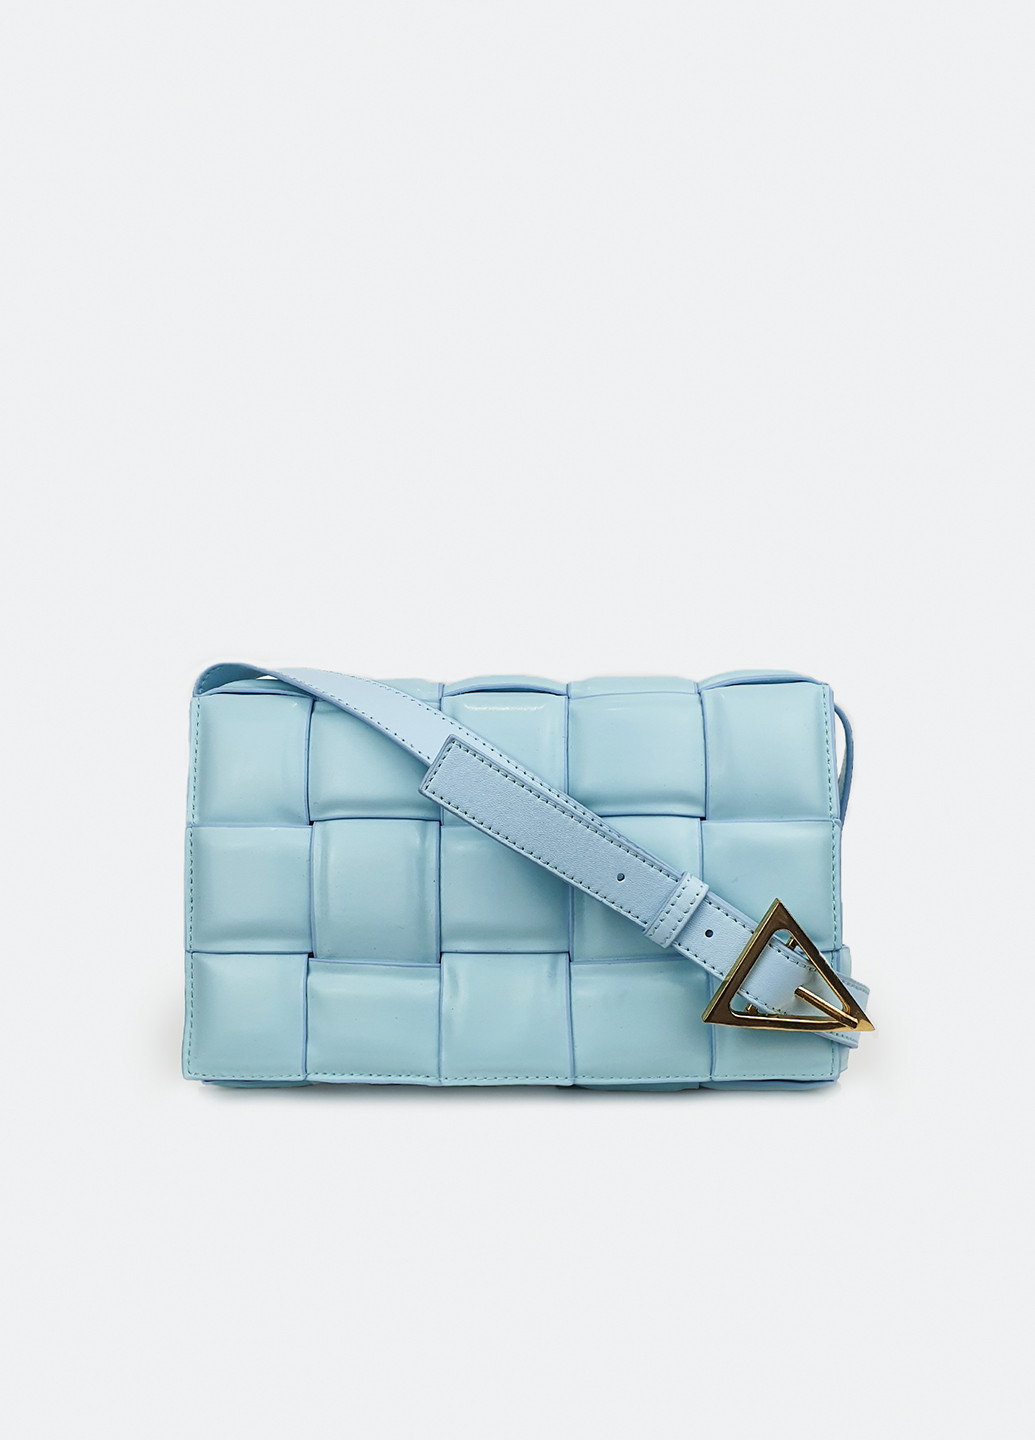 Модная женская сумка 2021 кожаная средняя на плечо голубая Fashion (229461539)